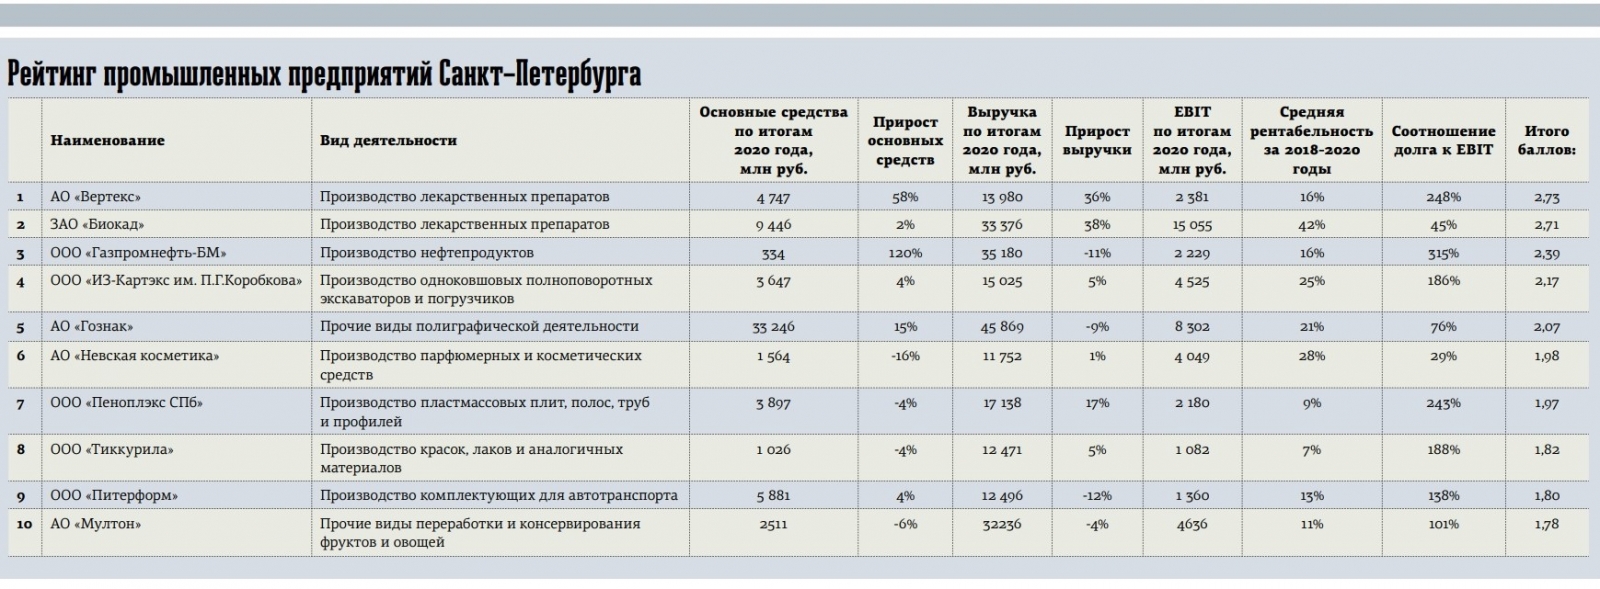 "ВЕРТЕКС" возглавил рейтинг промышленников Петербурга и отмечен как предприятие года